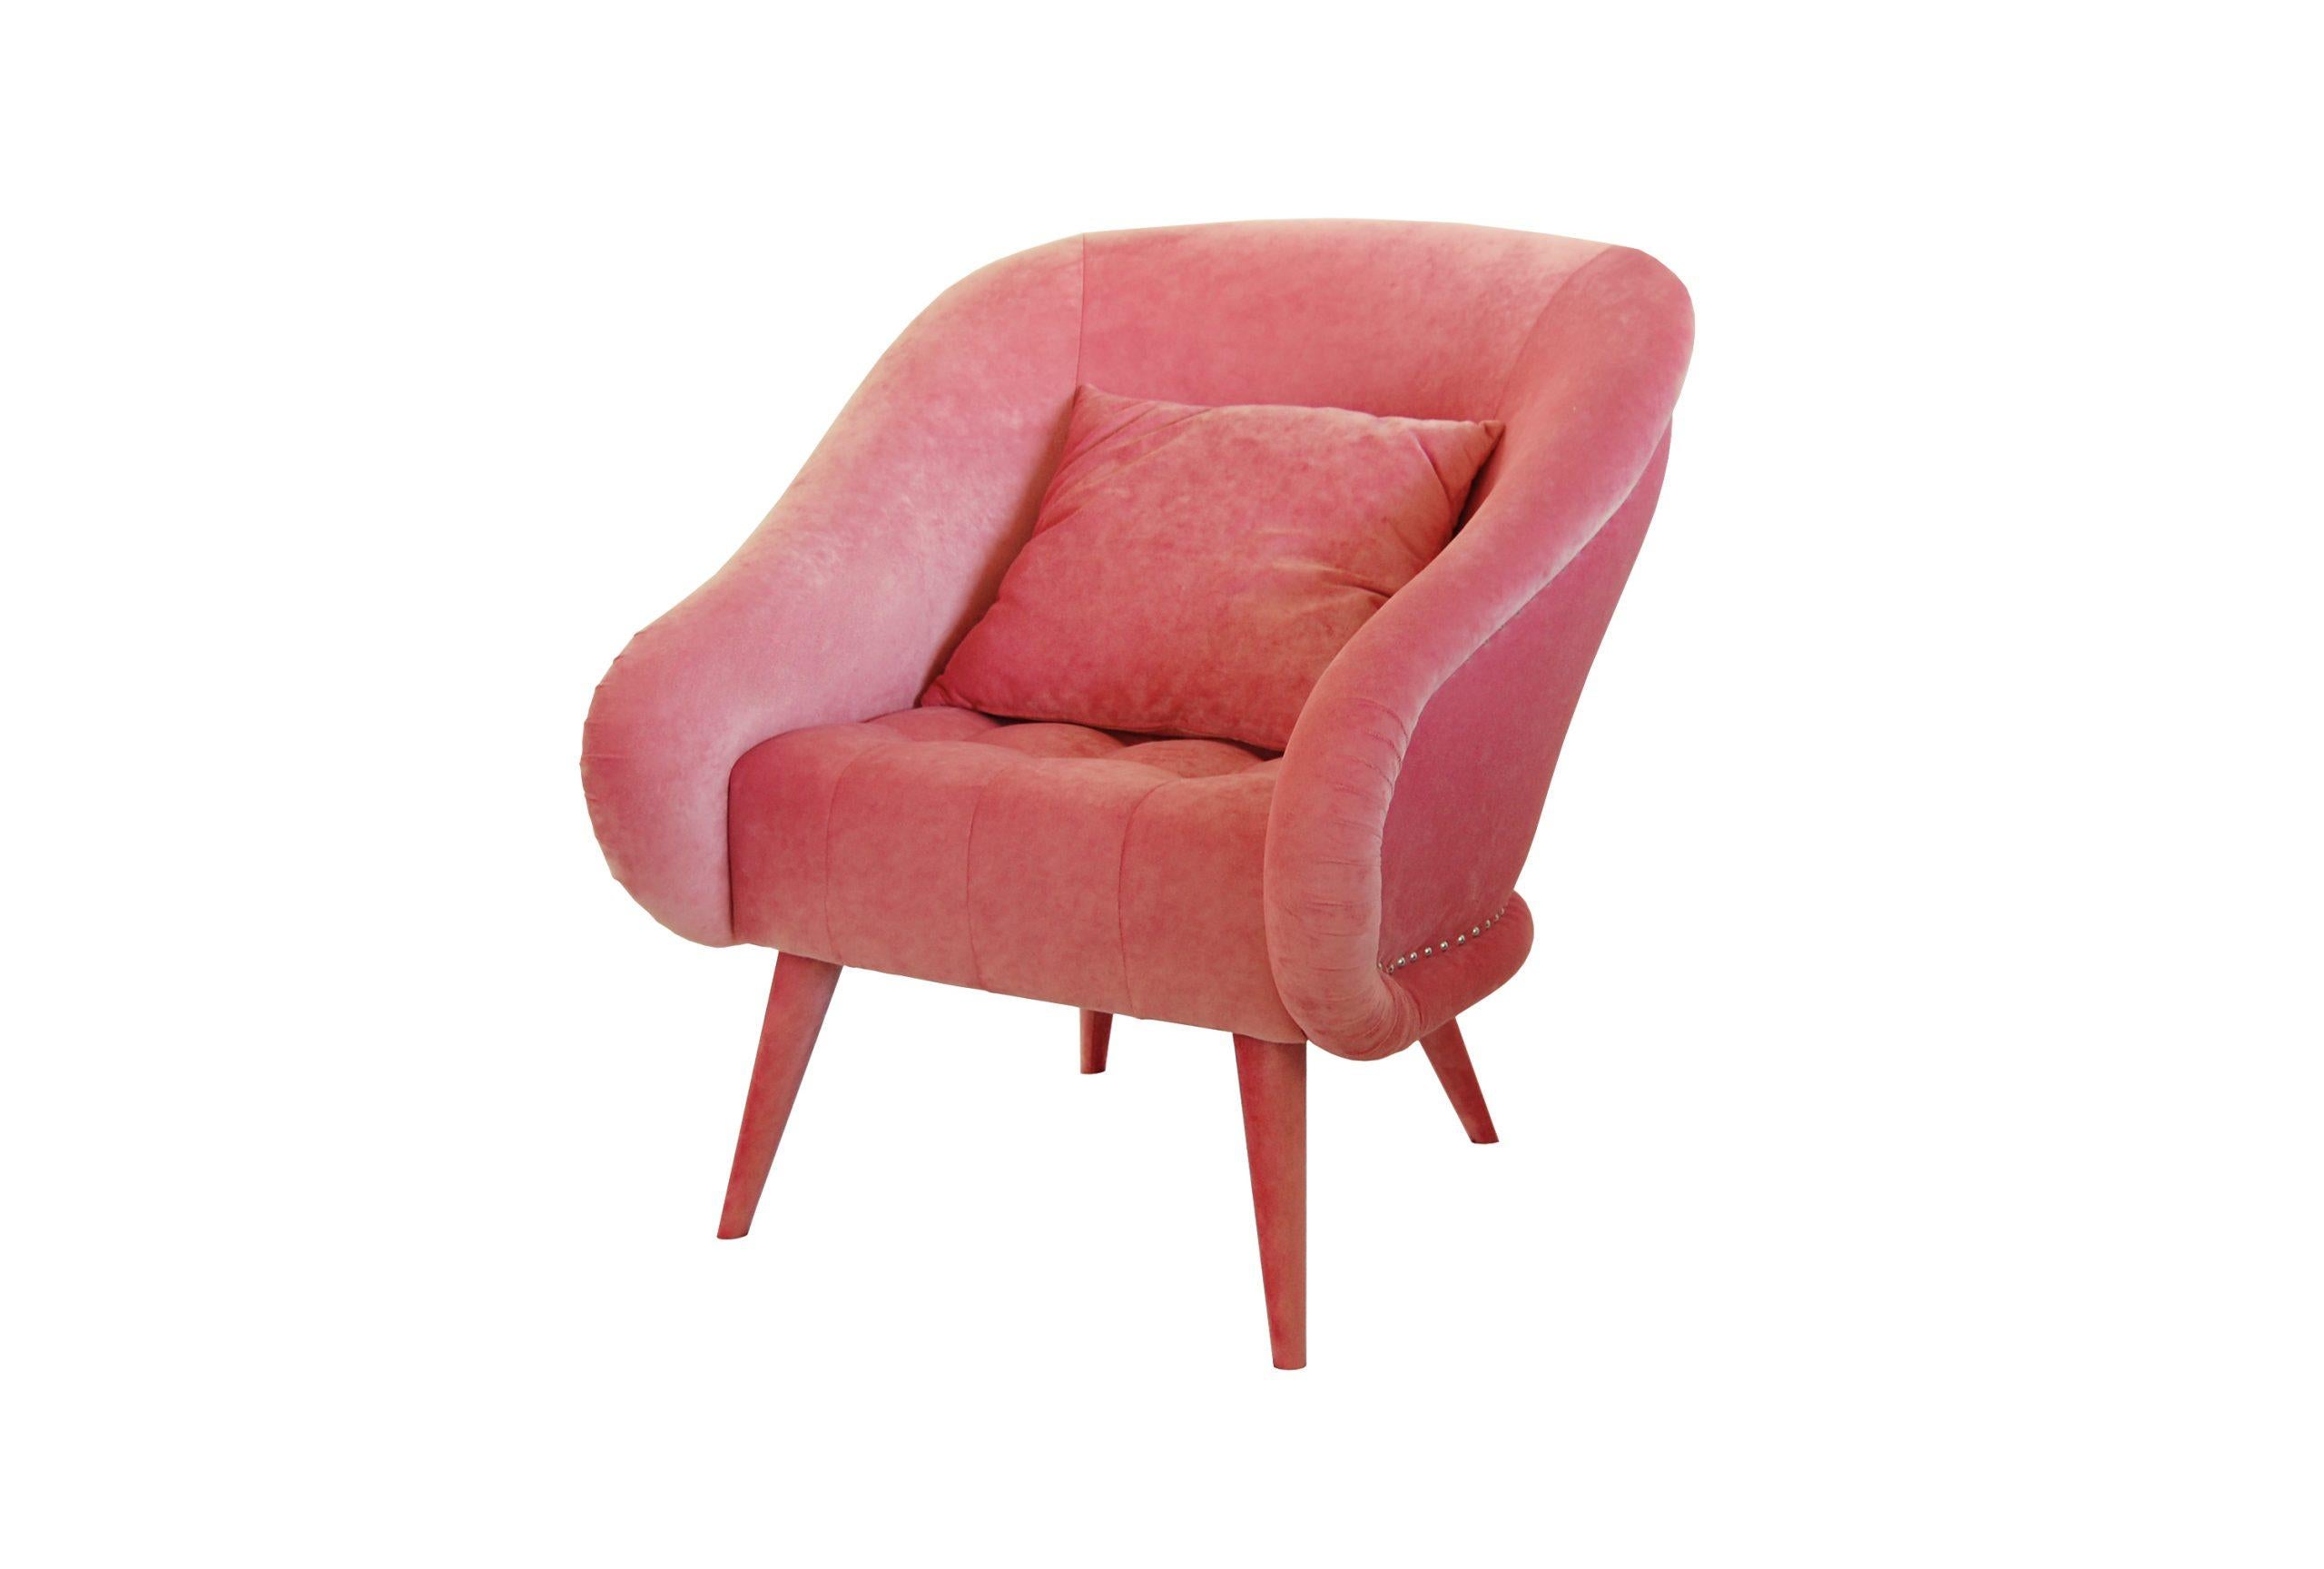 Die Silhouette und die Struktur dieses Stücks kommen einem sofort bekannt vor und erinnern an den Art-Deco-Sessel mit einem modernen, klaren Design. Sitz, Rückenlehne, Armlehnen und Beine sind mit luxuriösem Baumwollsamt gepolstert. Die Armlehnen